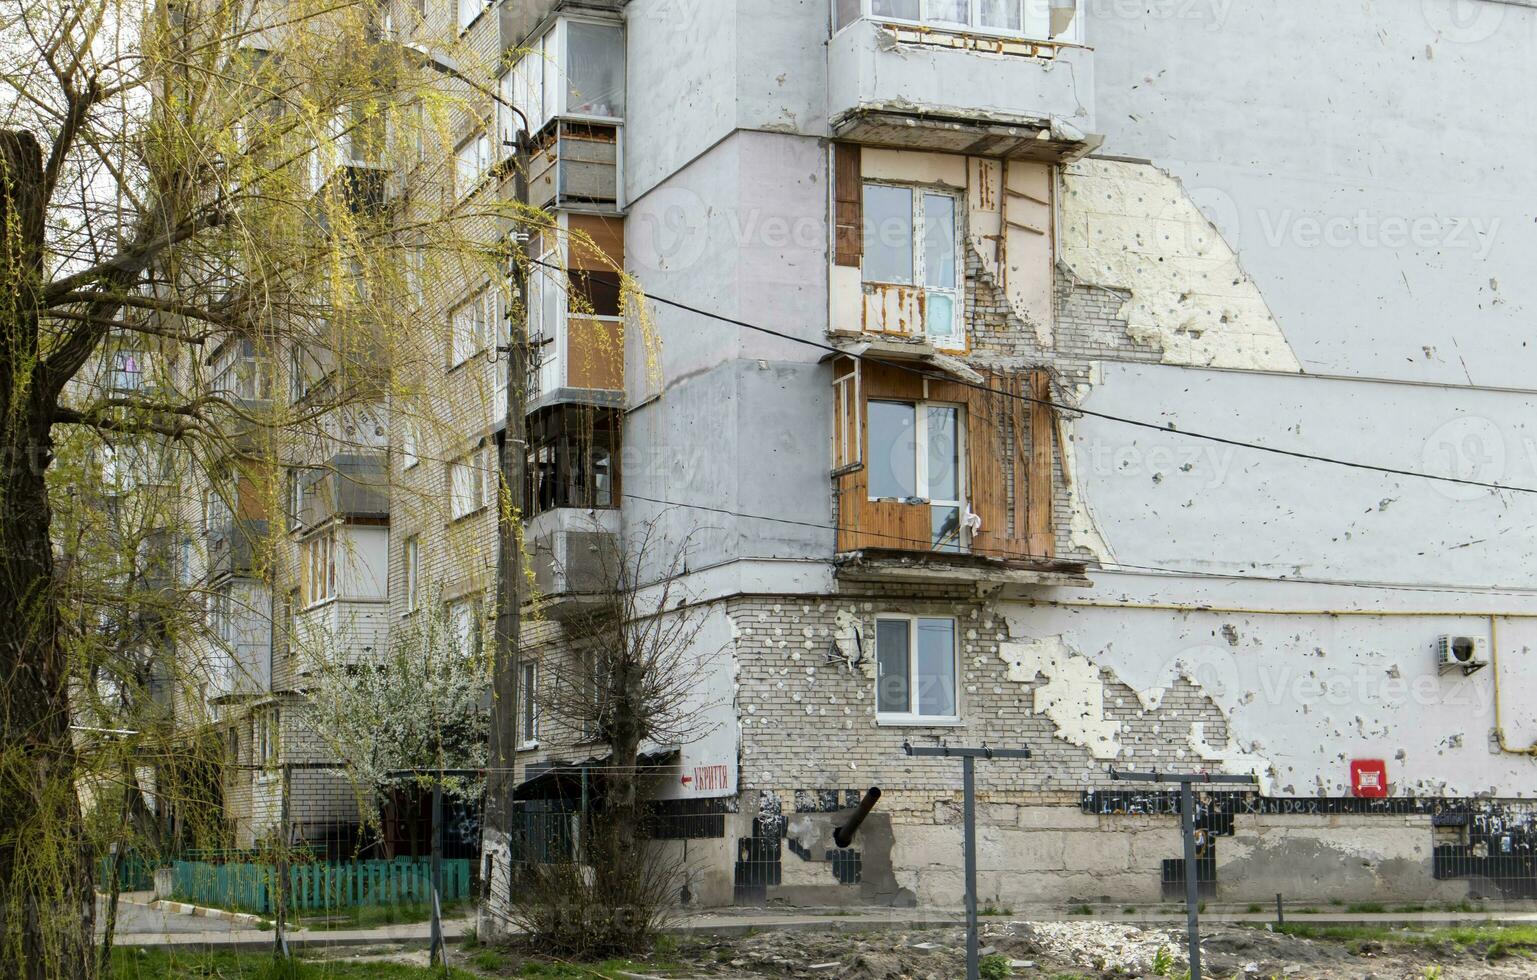 verbrand appartementen in een meerdere verdiepingen woon- gebouw, de gevolgen van de oorlog in Oekraïne. vertaling - schuilplaats. gebombardeerd woon- gebouw. Oekraïne, kyiv - april 29, 2023. foto